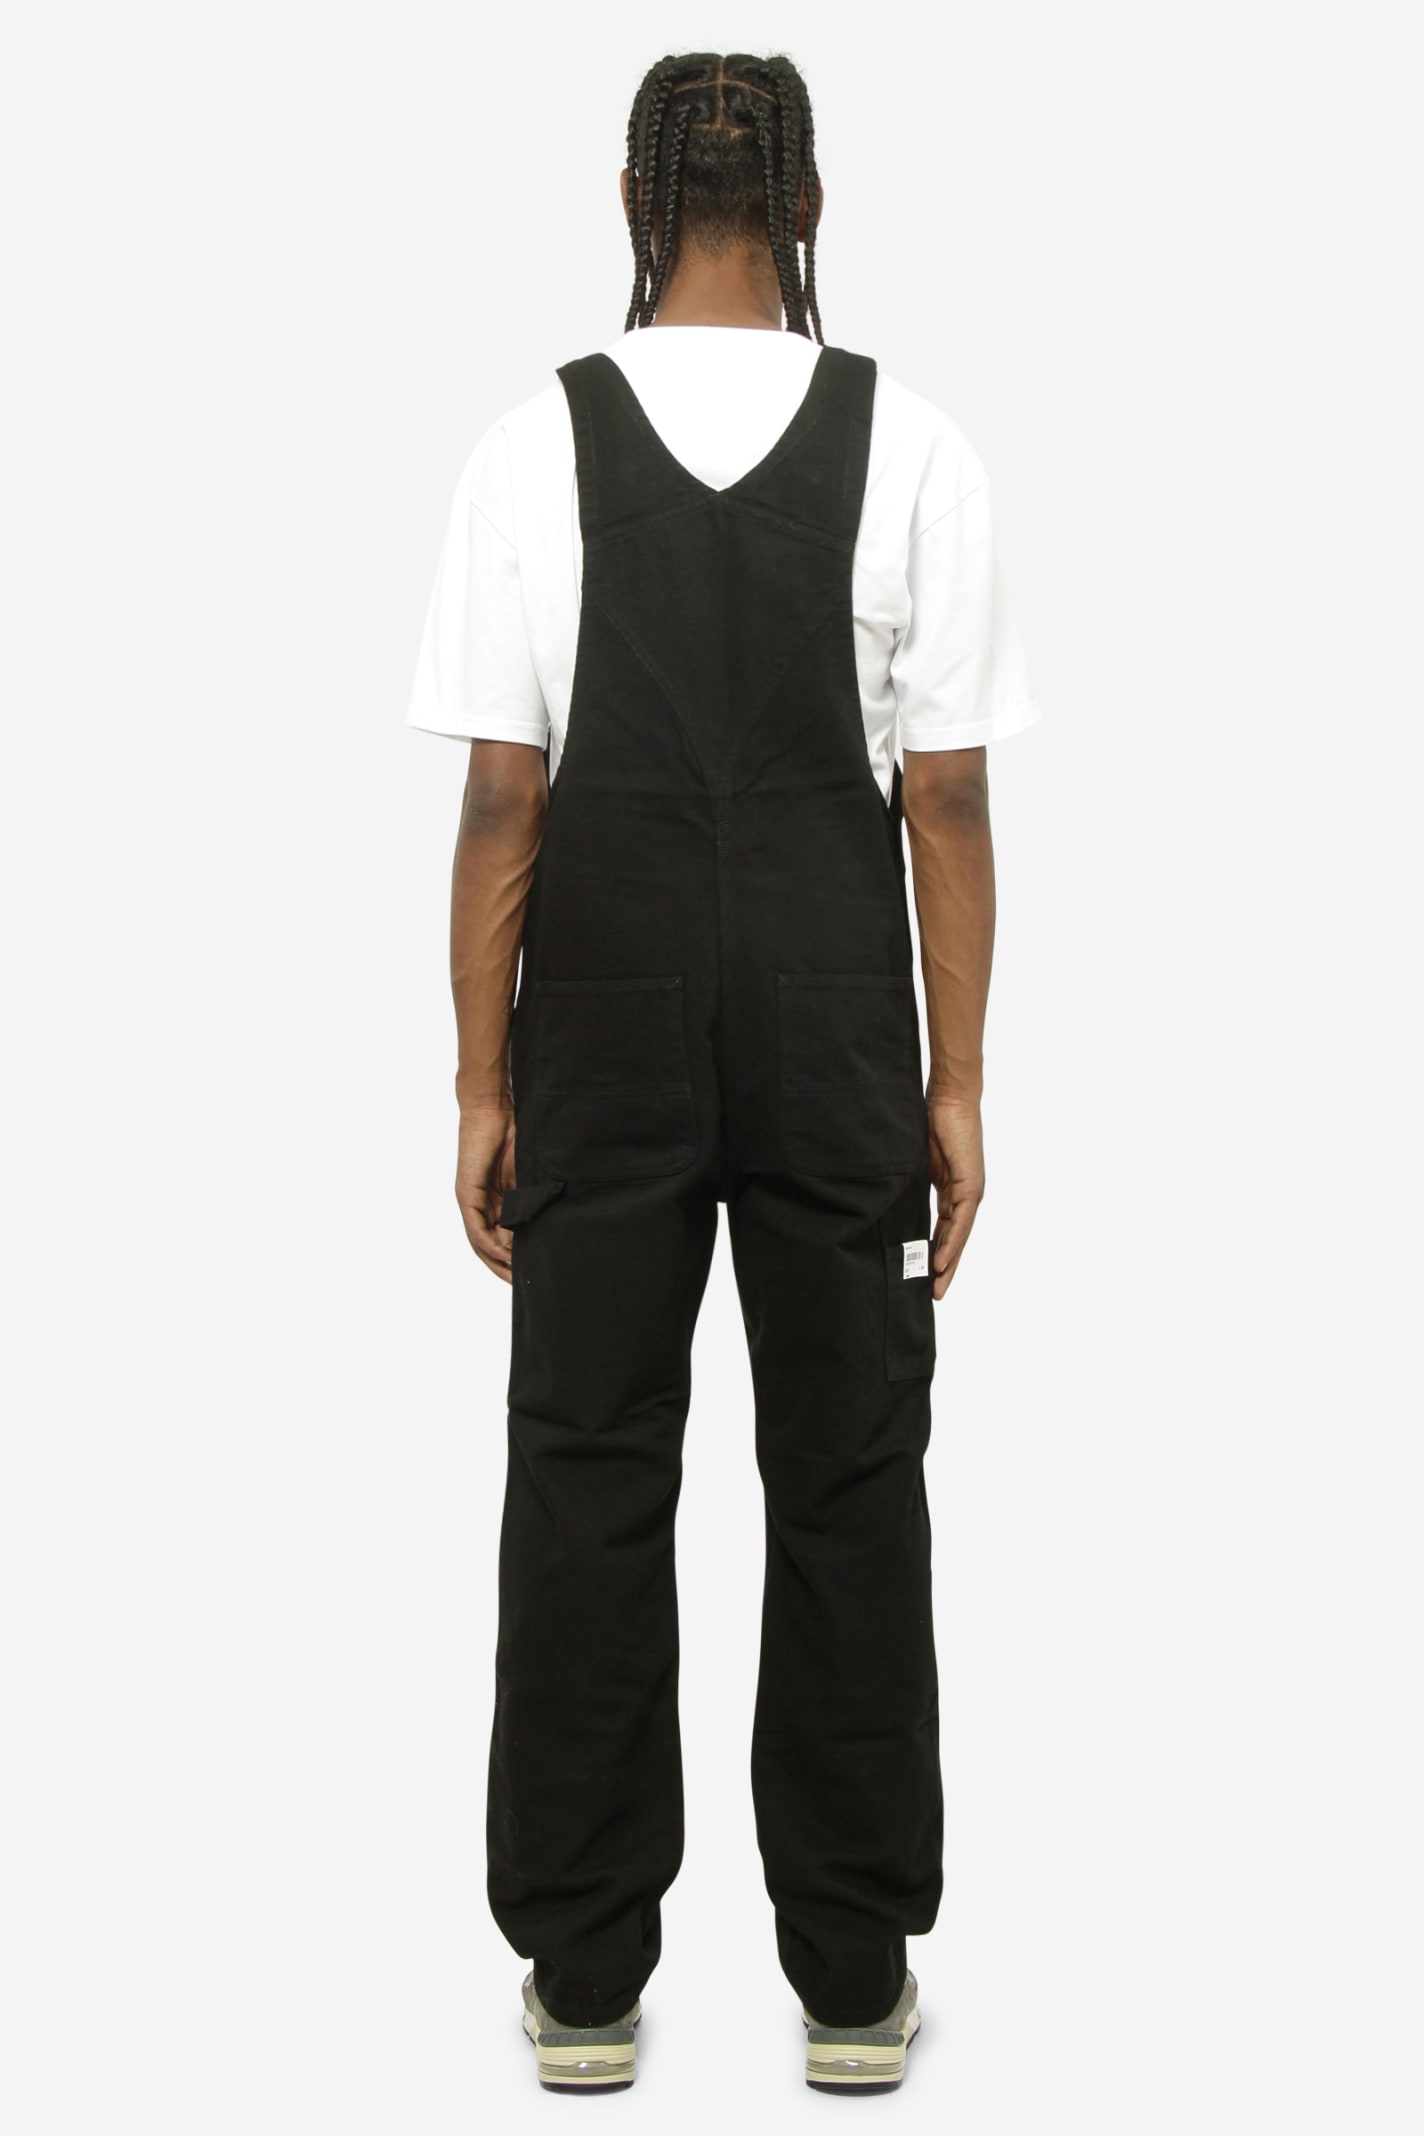 Shop Carhartt Bib Overall Suit In Black